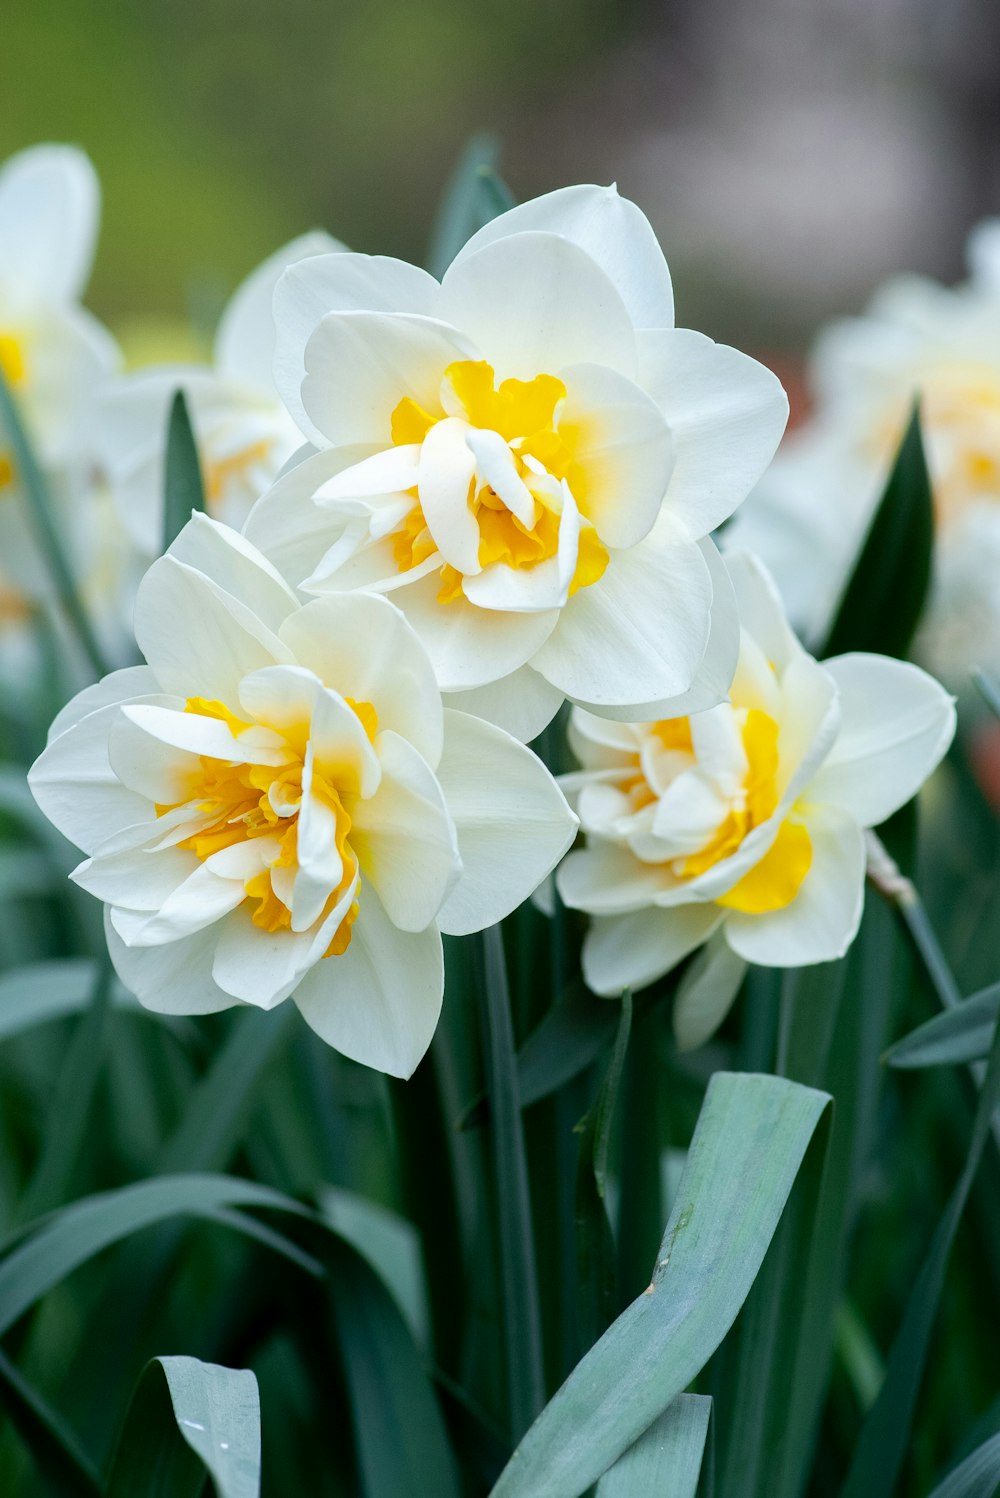 narcisos blancos y amarillos en flor durante el día